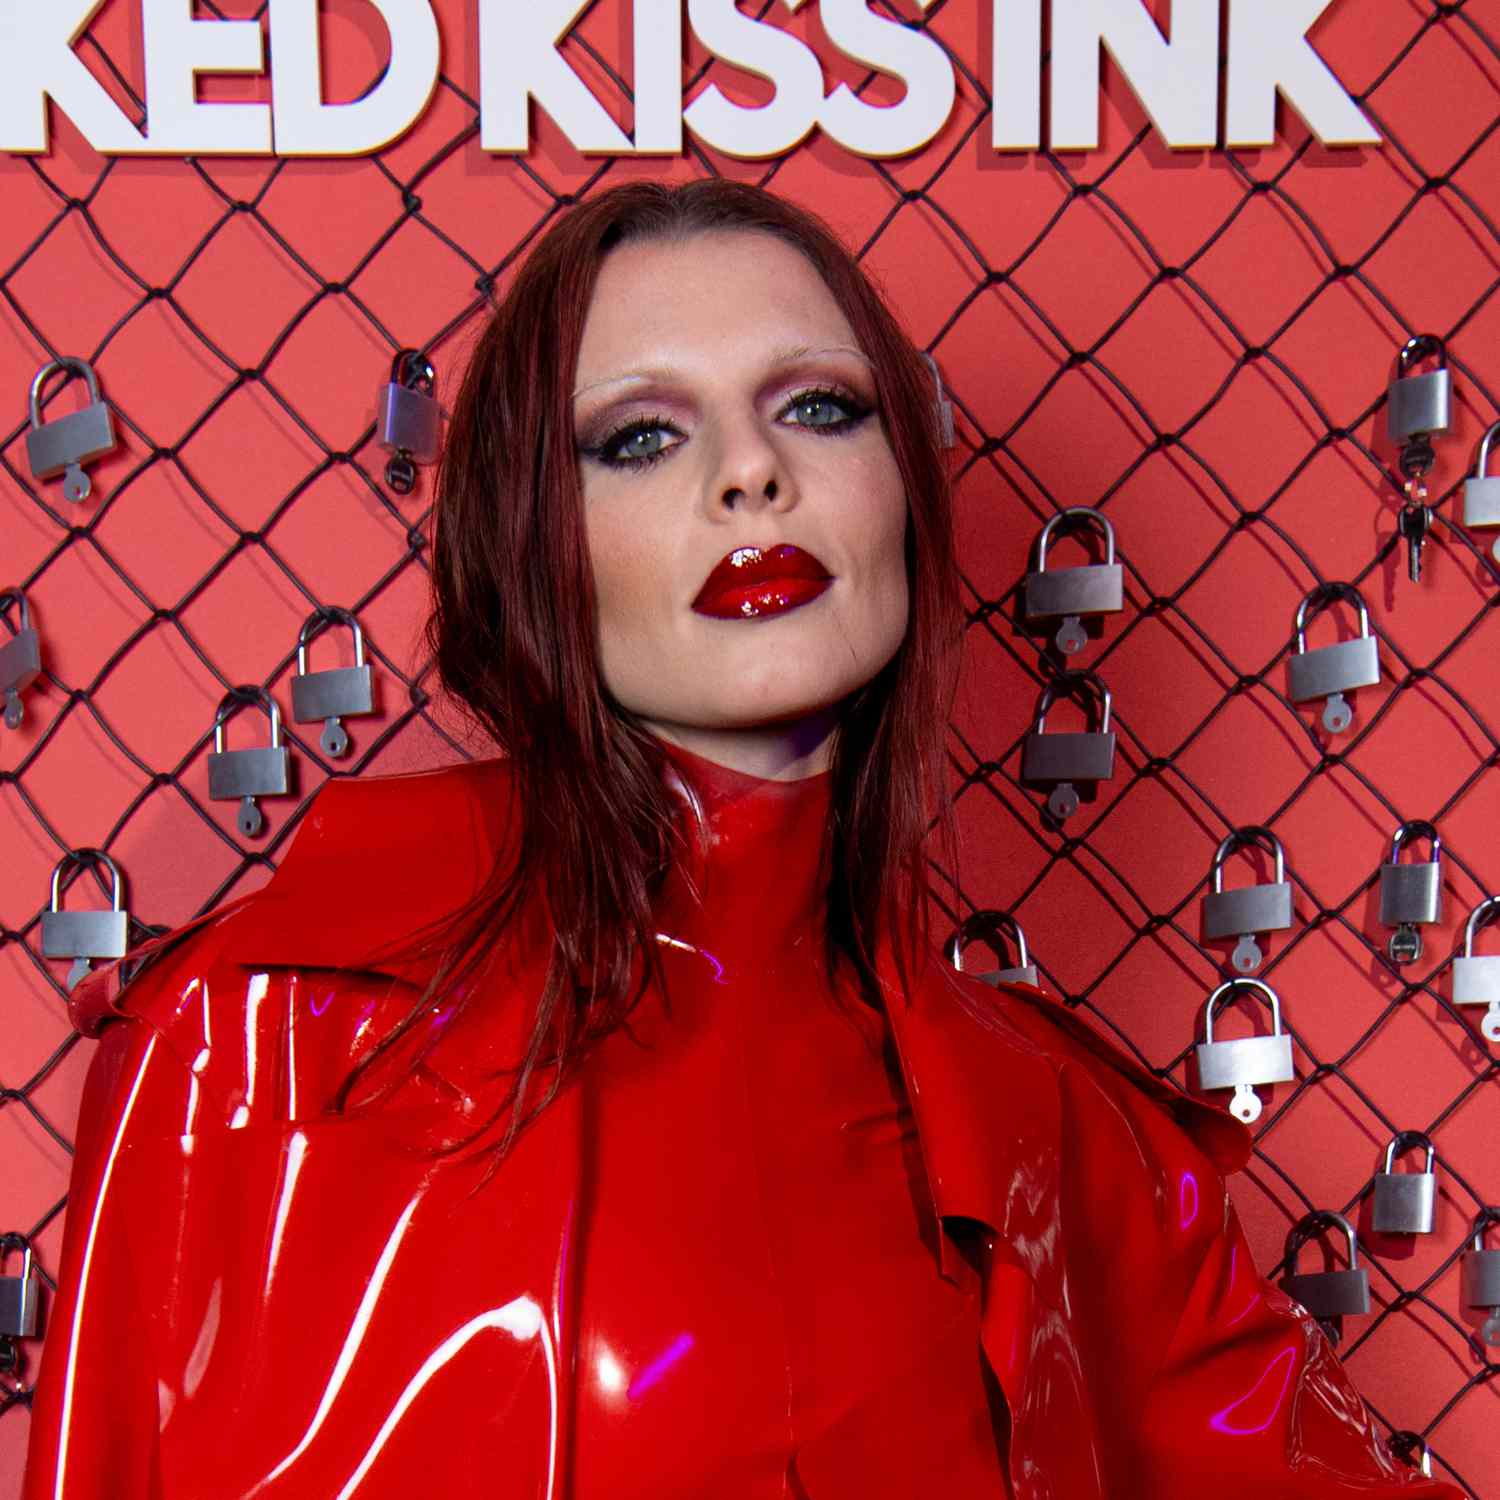 Julia Fox usa tons de defumado vermelho para pálpebras com delineador preto intenso e lábios vermelhos envernizados com sobrancelhas finas